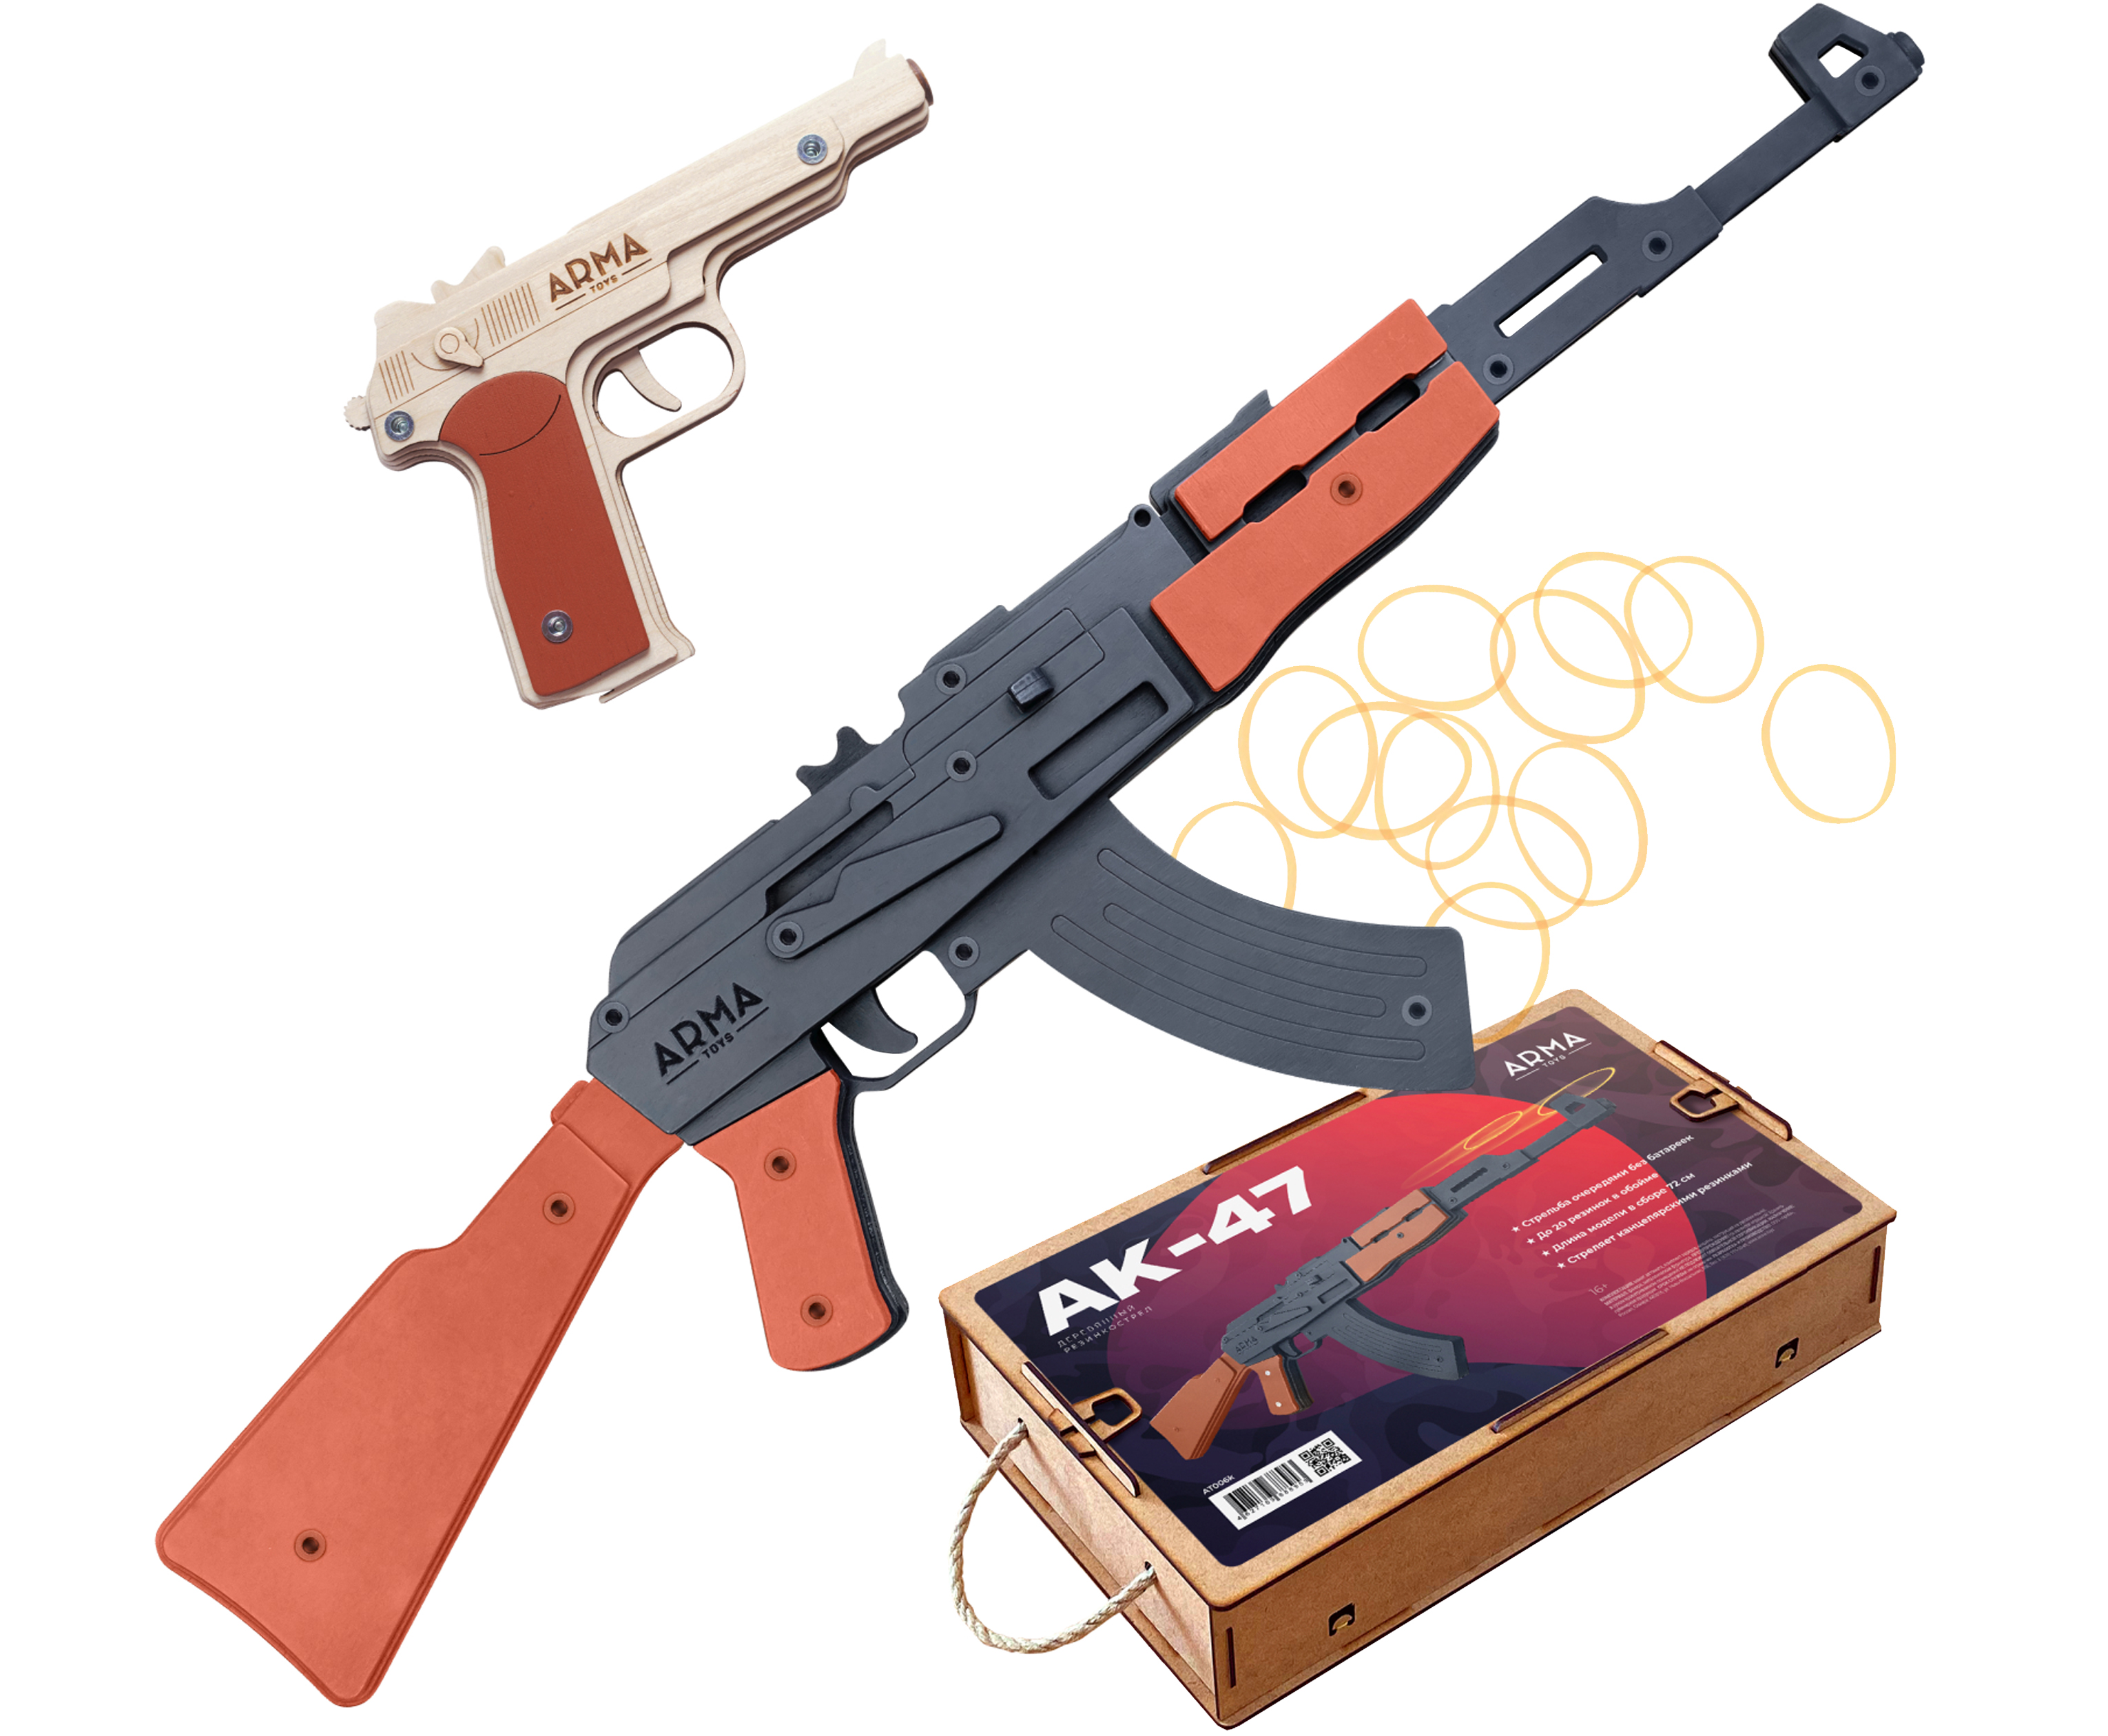 Набор игрушечных резинкострелов Arma toys Военный специалист 2 набор резинкострелов arma toys спецназ фбр 2 винтовка m4 пистолет глок at510